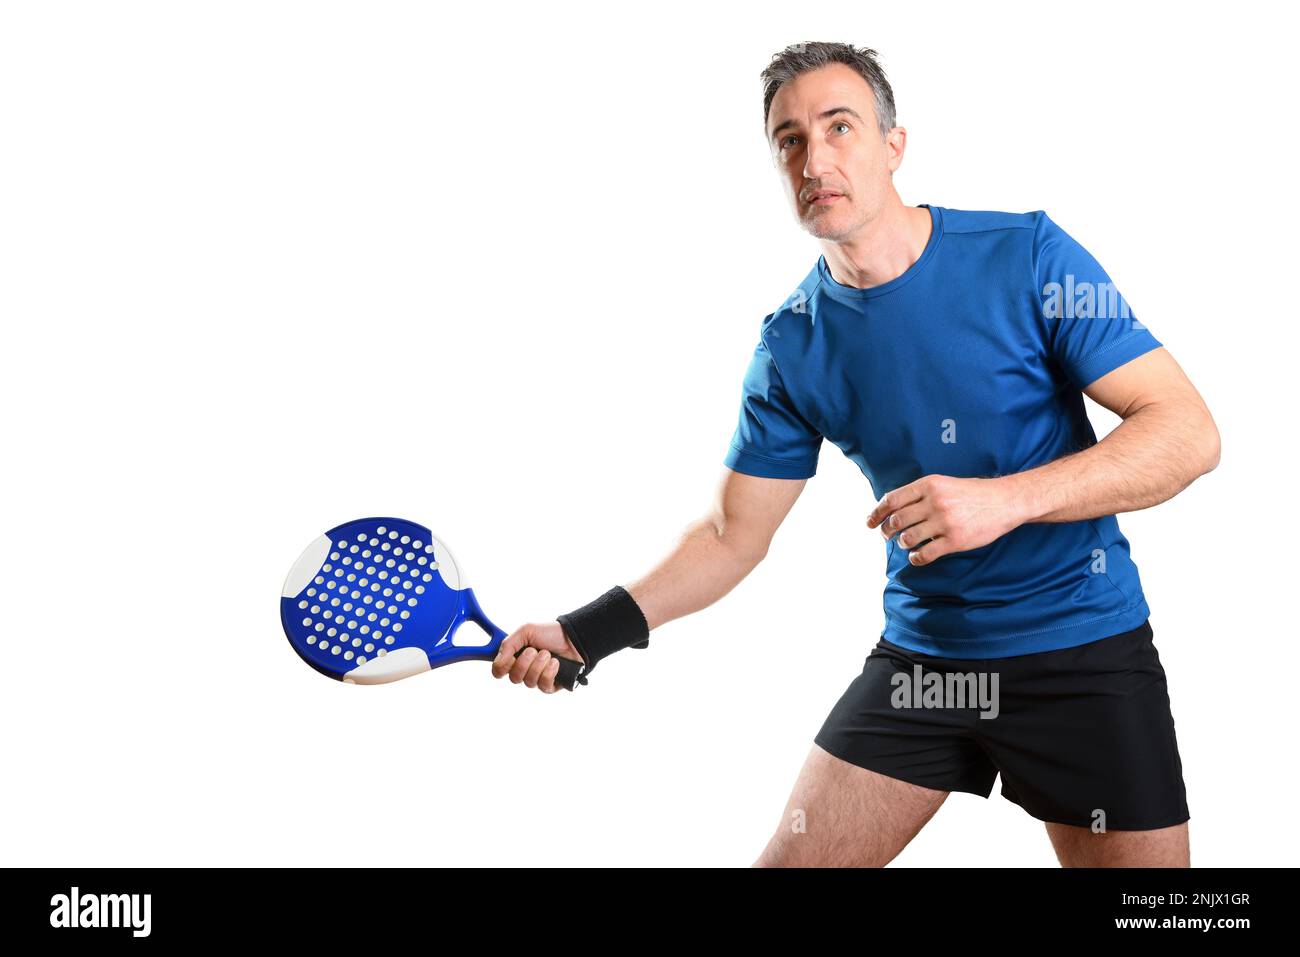 Portrait d'un homme jouant au paddle-tennis avec une raquette en main pour recevoir une balle portant une tenue de sport bleue et noire et un sac isolé blanc Banque D'Images